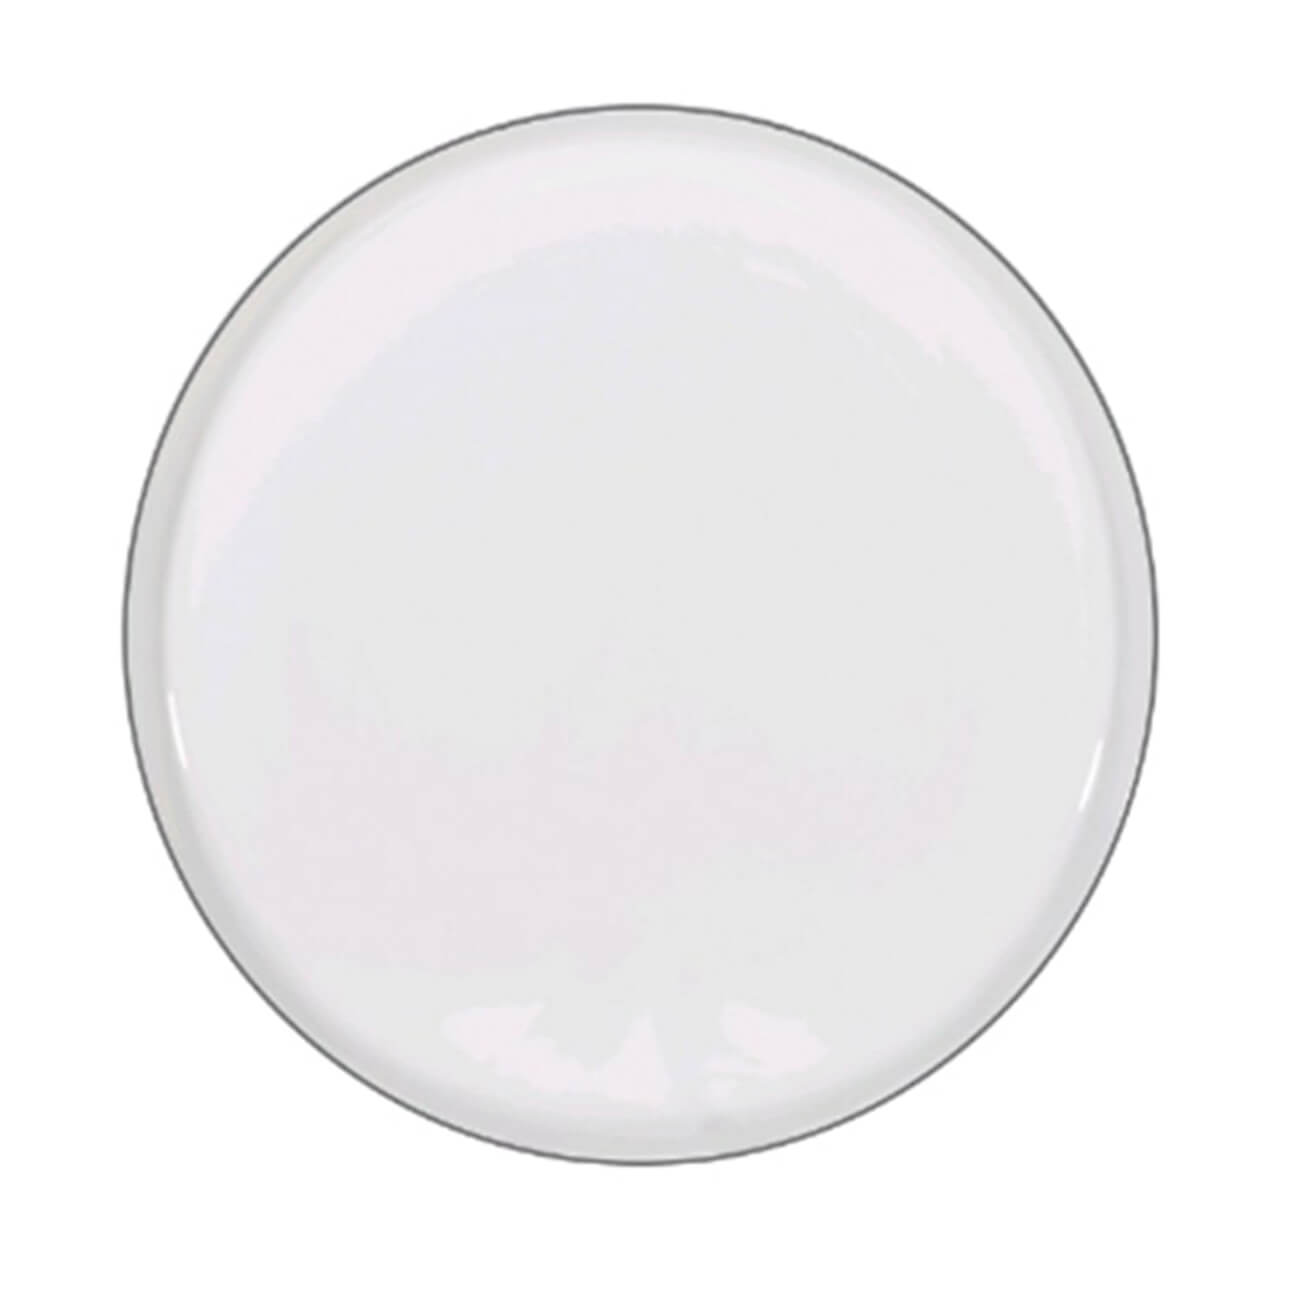 Dessert plate, 20 cm, 2 pcs, porcelain F, white, Ideal silver изображение № 1